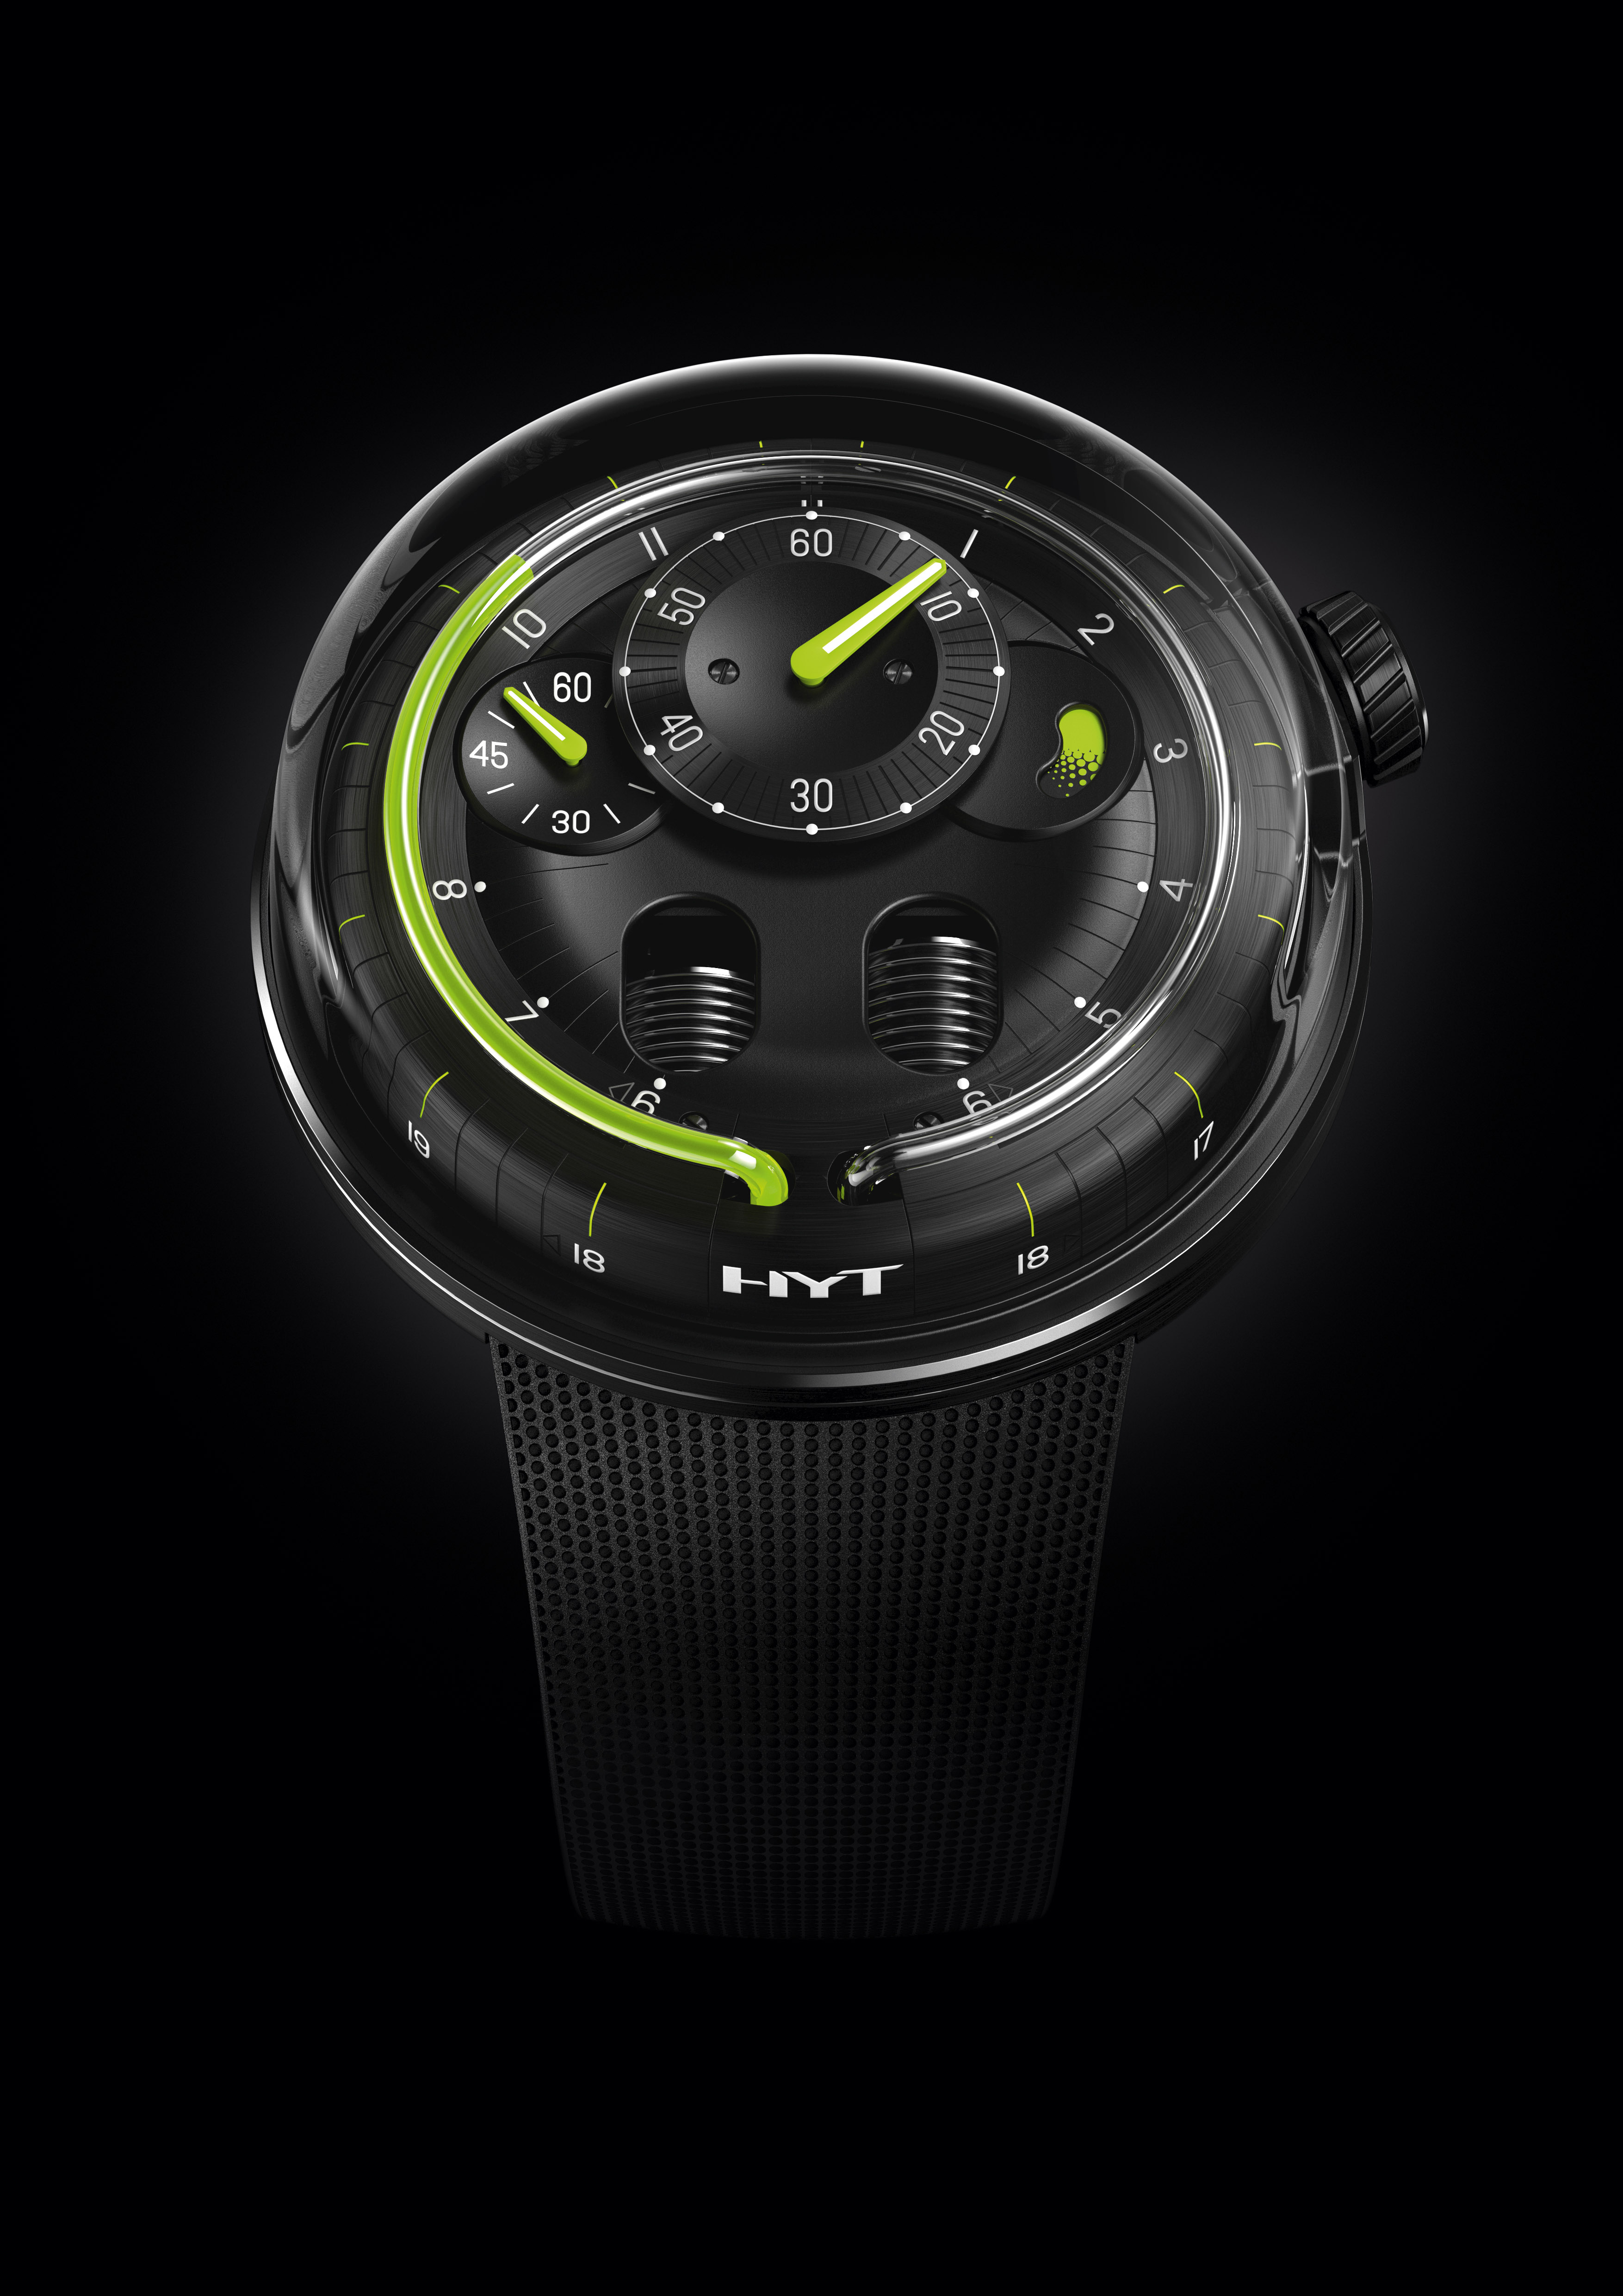 Ultra big часы. HYT h0 Black Hydro-Mechanical watch. HYT h1 Hydro-Mechanical watch. HYT h3. Наручные часы HYT, модель h1 Dracula DLC.